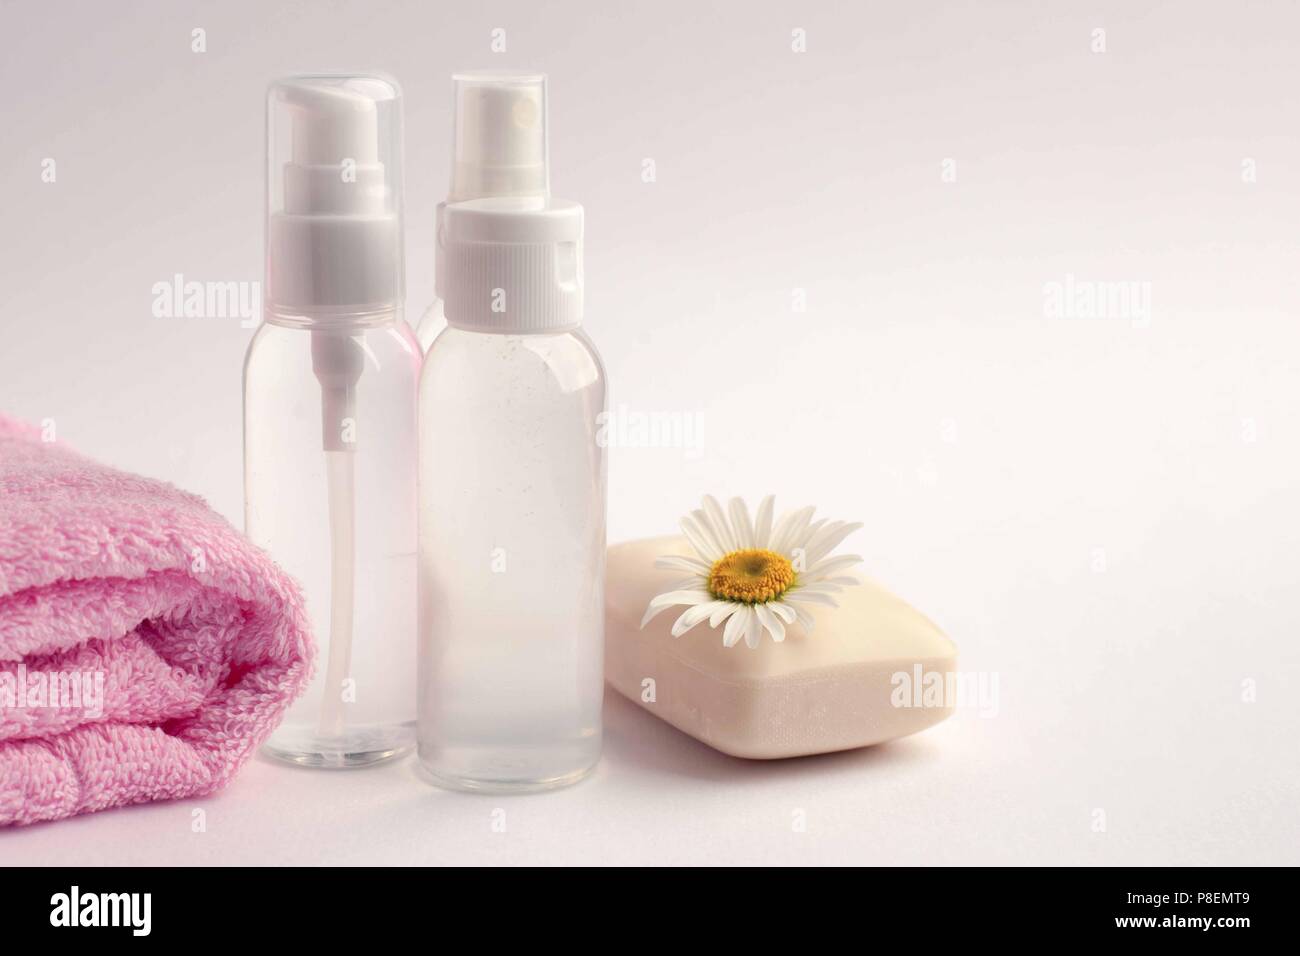 Botella de cosméticos camomole contenedores con flores, paquete de etiquetas en blanco para el branding mock-up, el concepto de productos orgánicos de belleza natural Foto de stock